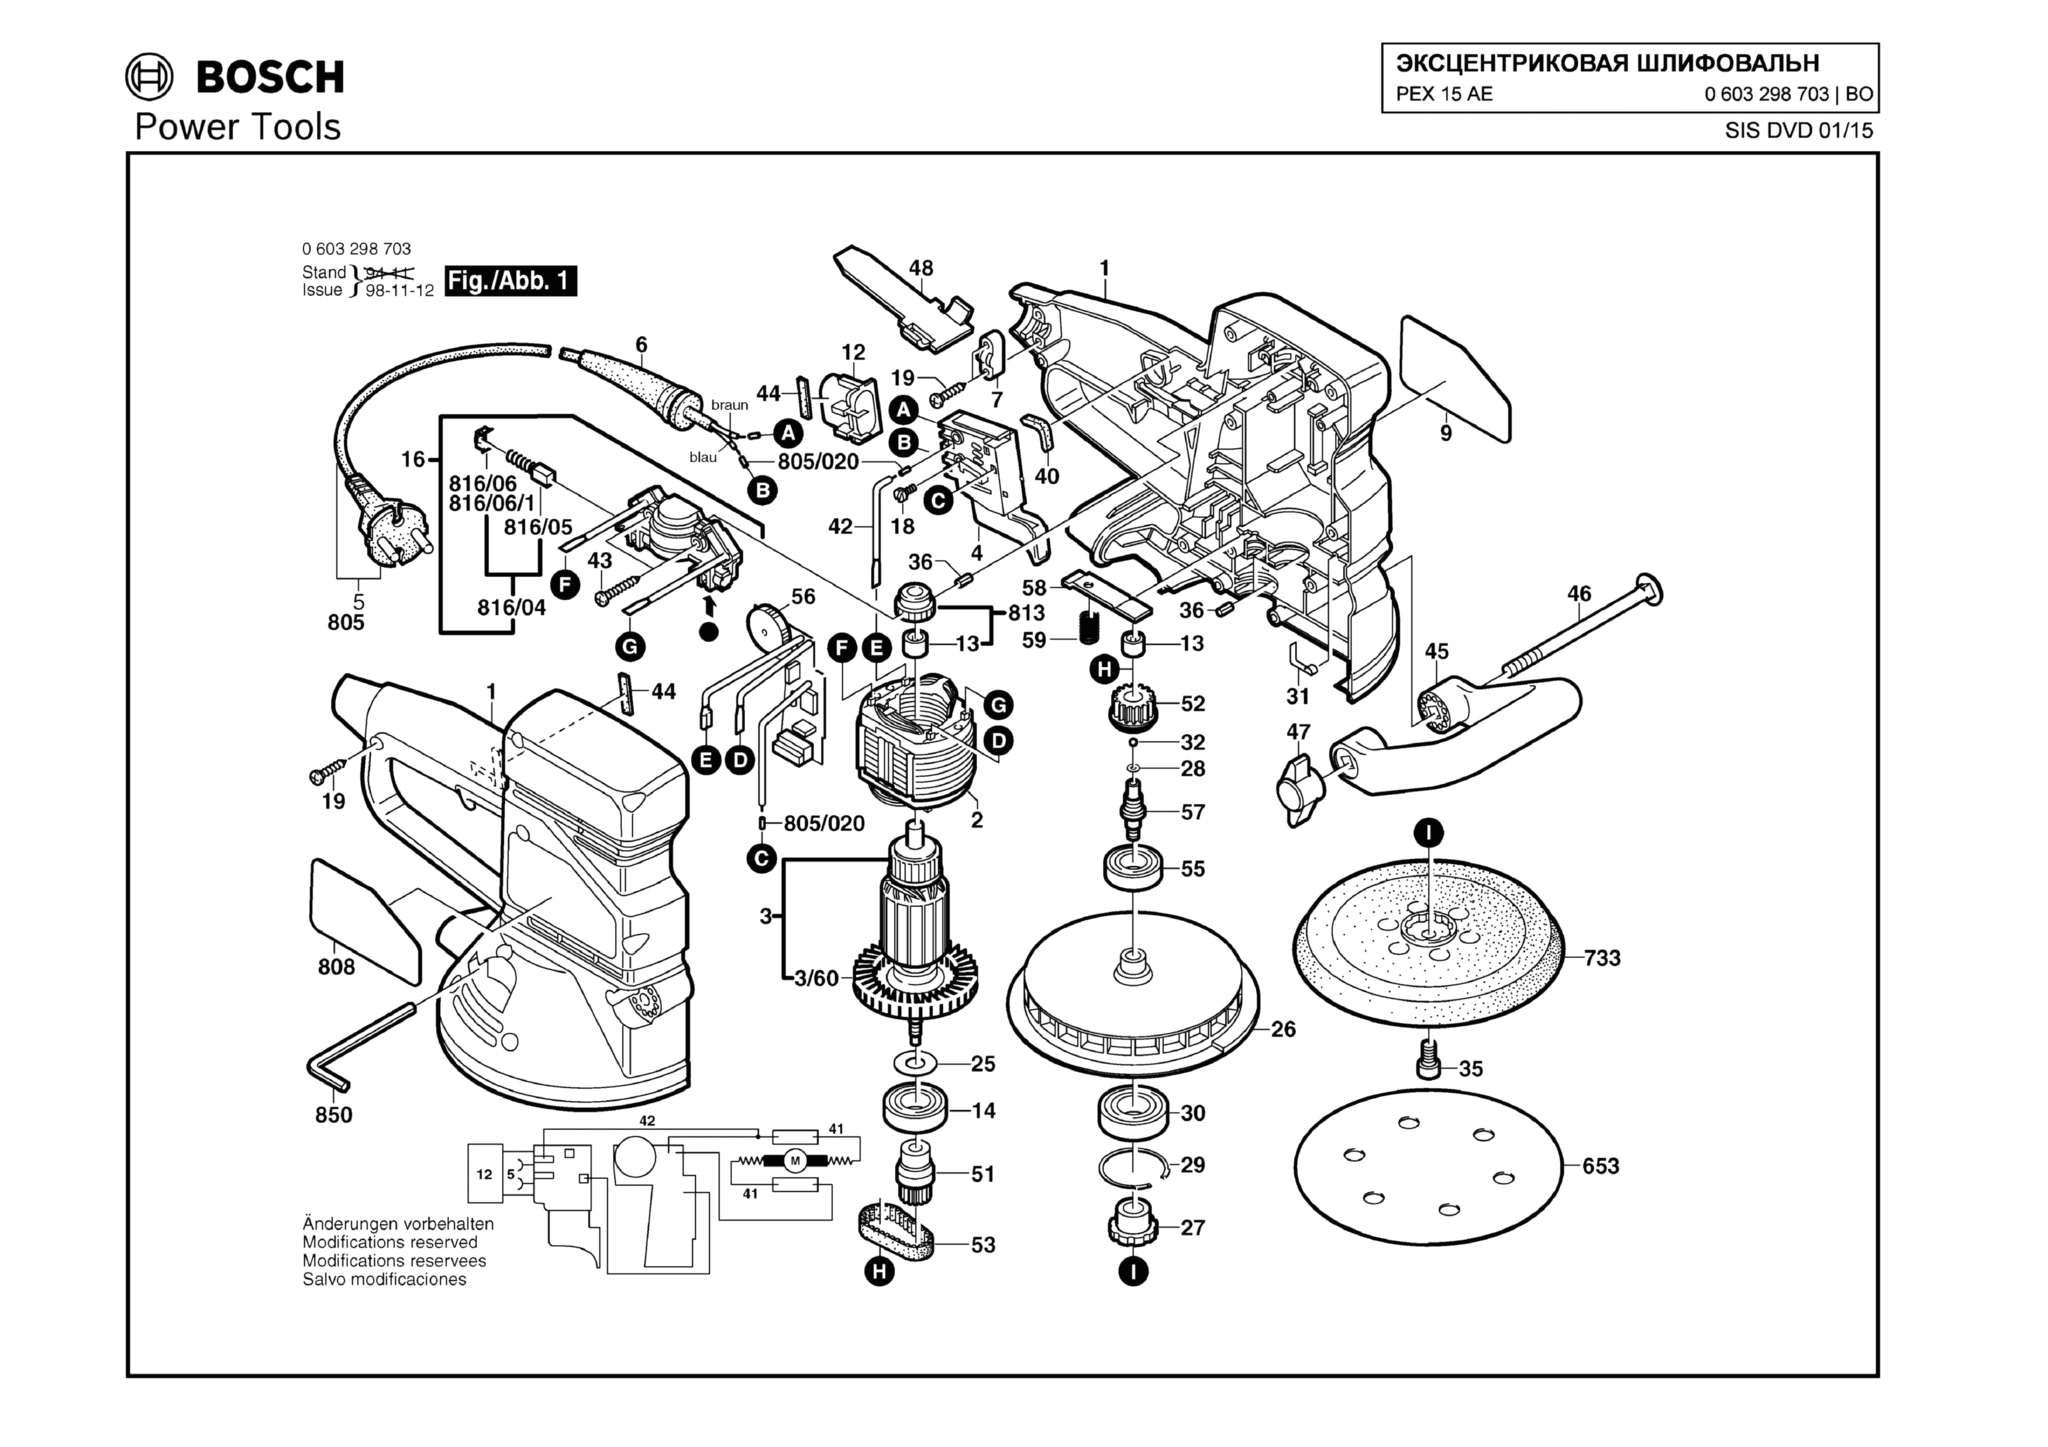 Запчасти, схема и деталировка Bosch PEX 15 AE (ТИП 0603298703)